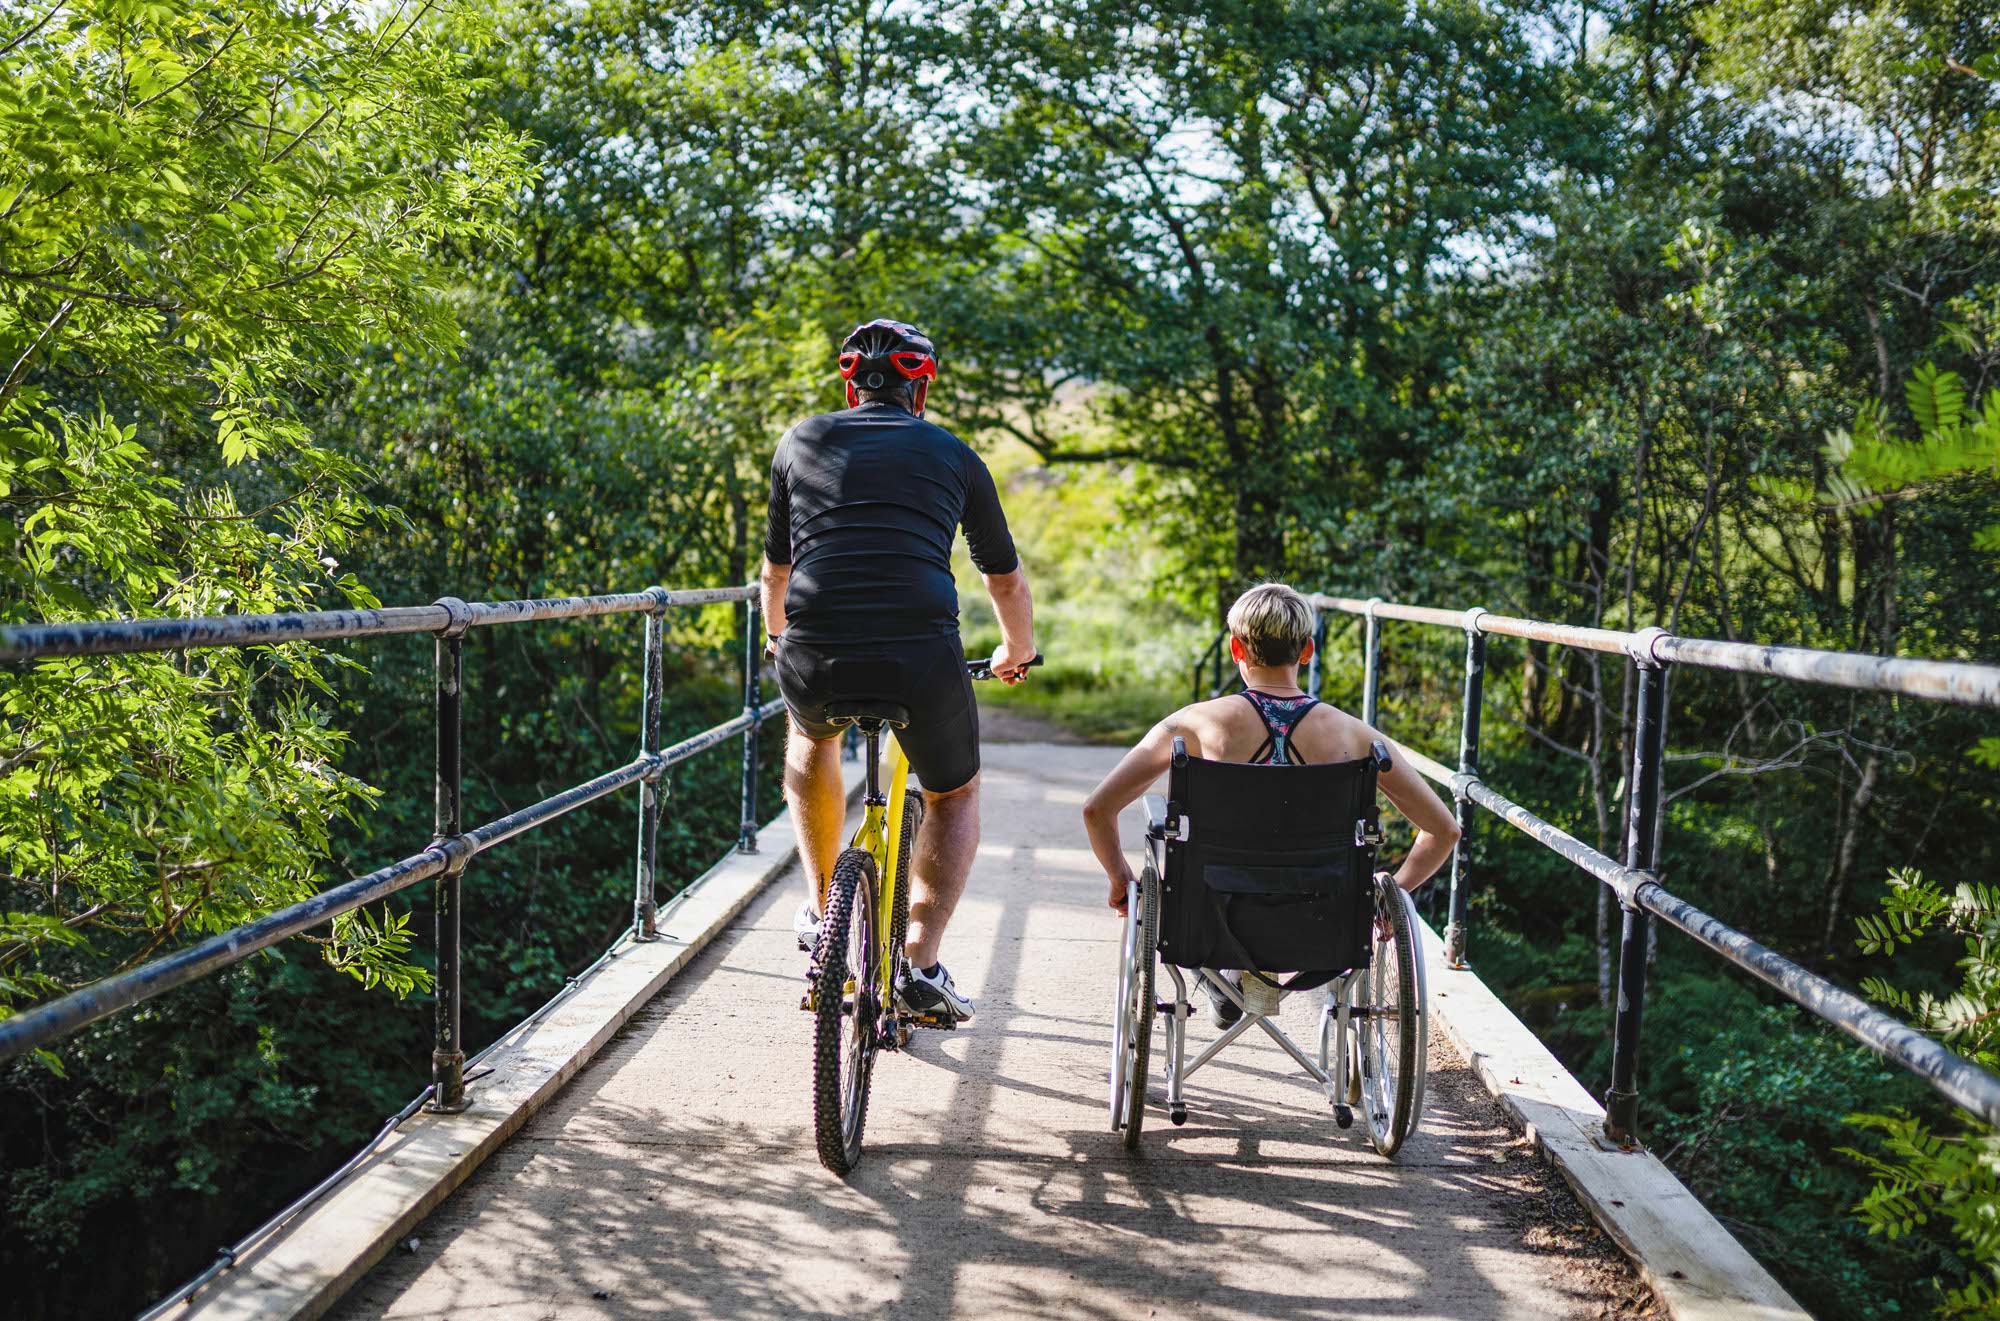 Eine Frau im Rollstuhl, begleitet von einem Freund auf dem Fahrrad, fährt über eine Holzbrücke in einem grünen Wald